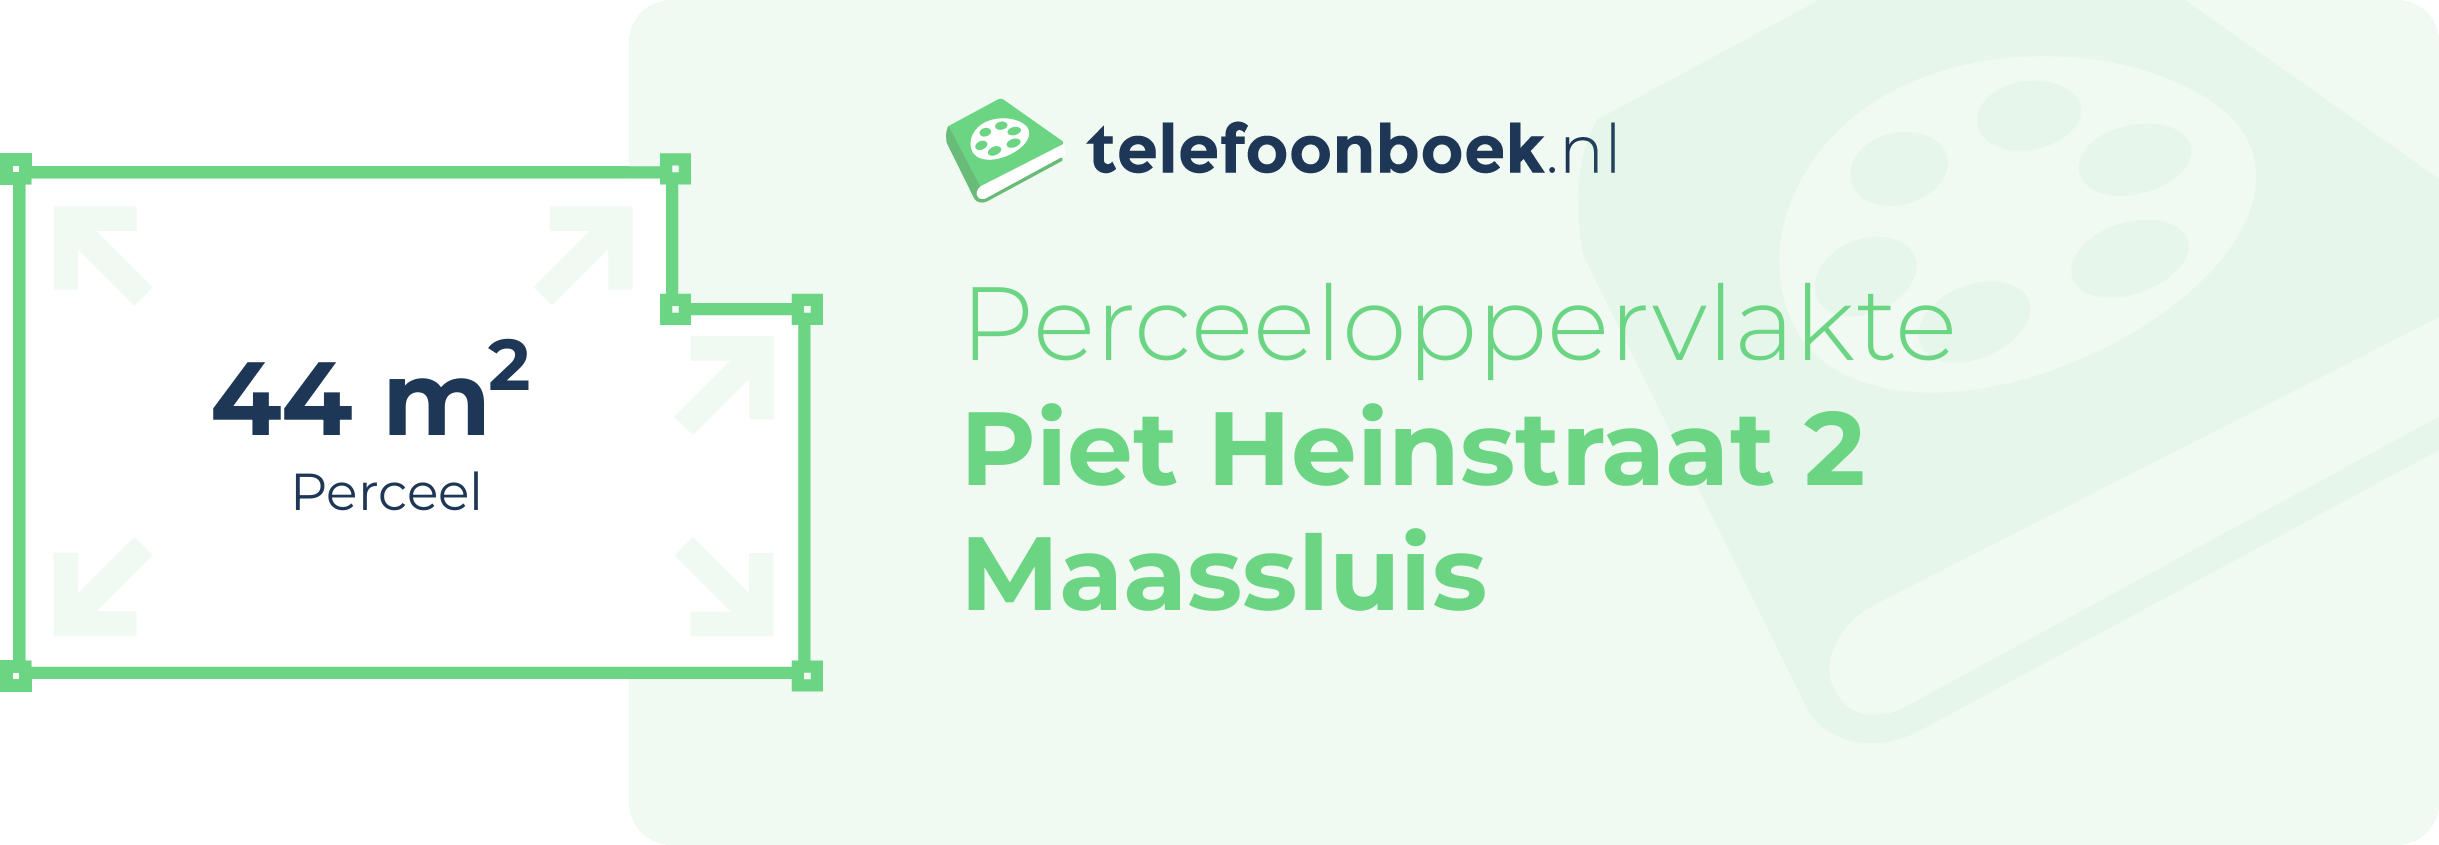 Perceeloppervlakte Piet Heinstraat 2 Maassluis